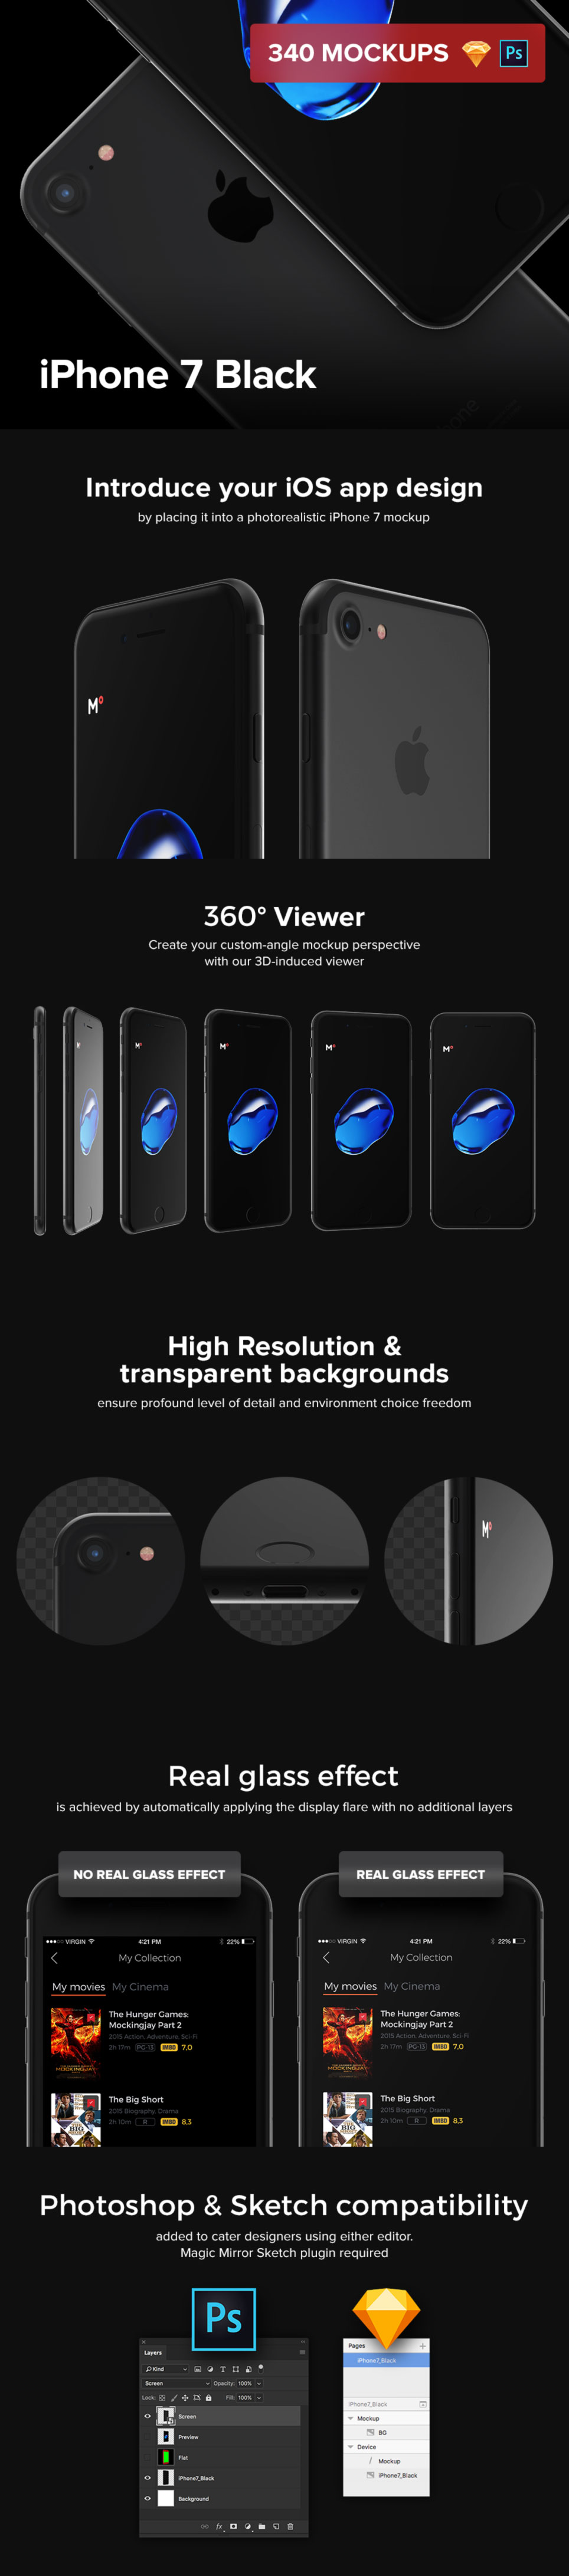 一套完美的iPhone7 360度展示模型下载[PSD,Sketch,360度HTML效果]